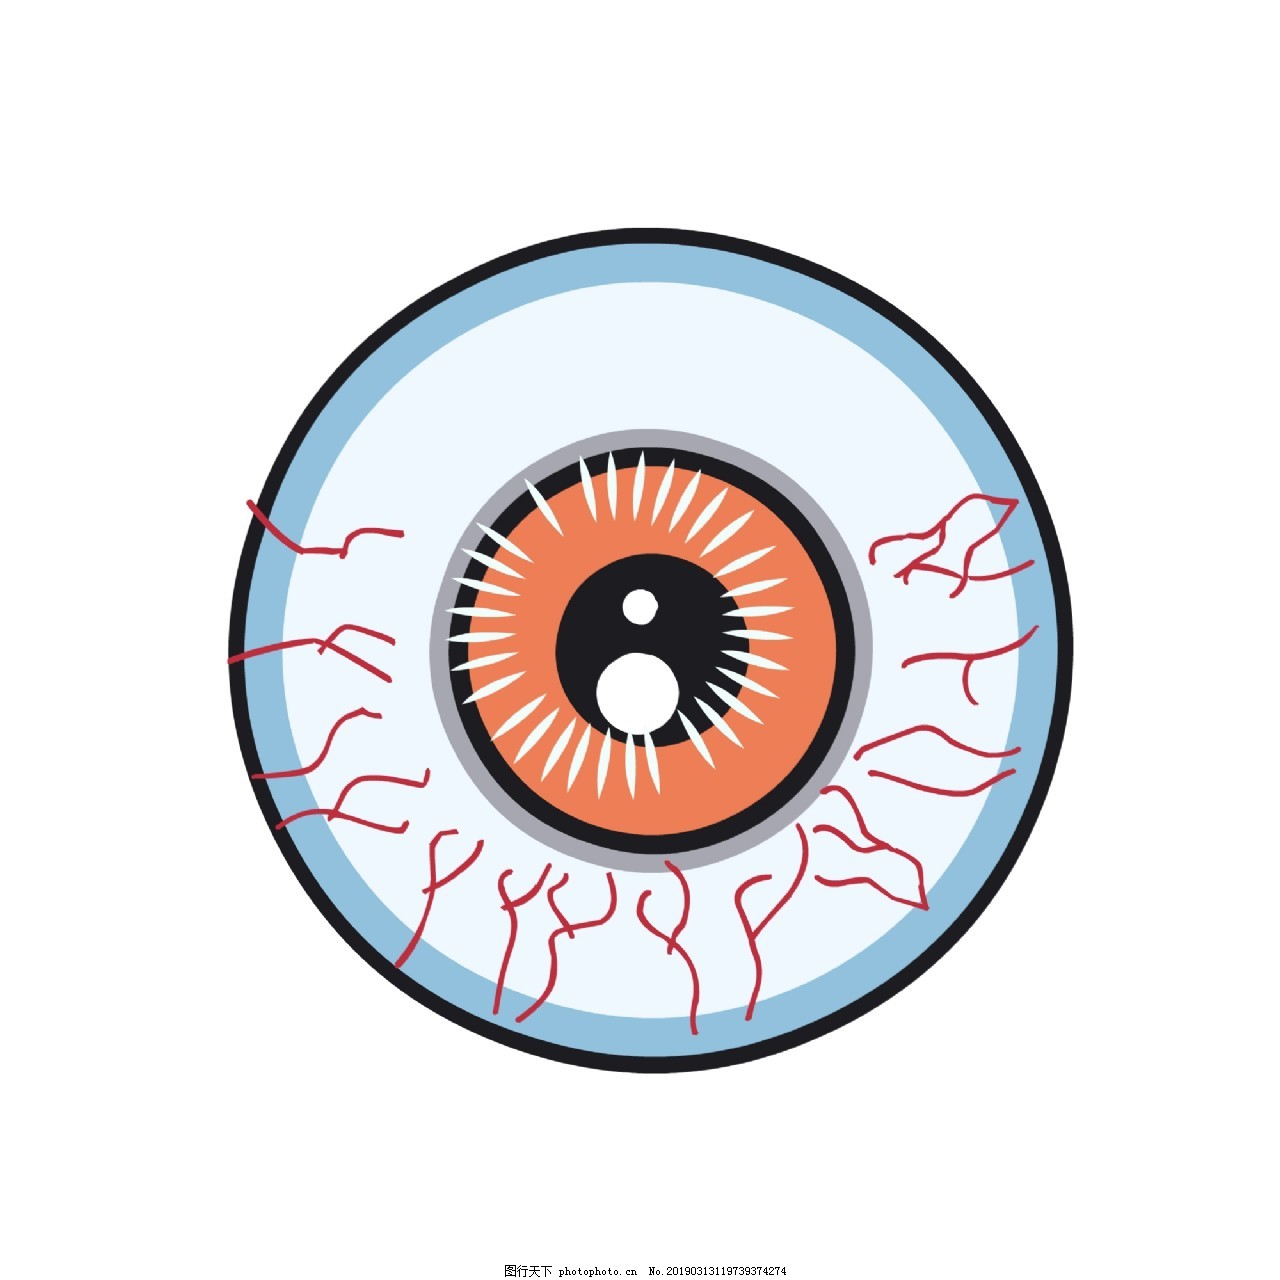 NEWCLAR-红眼睛血丝人像插图-欧莱凯设计网